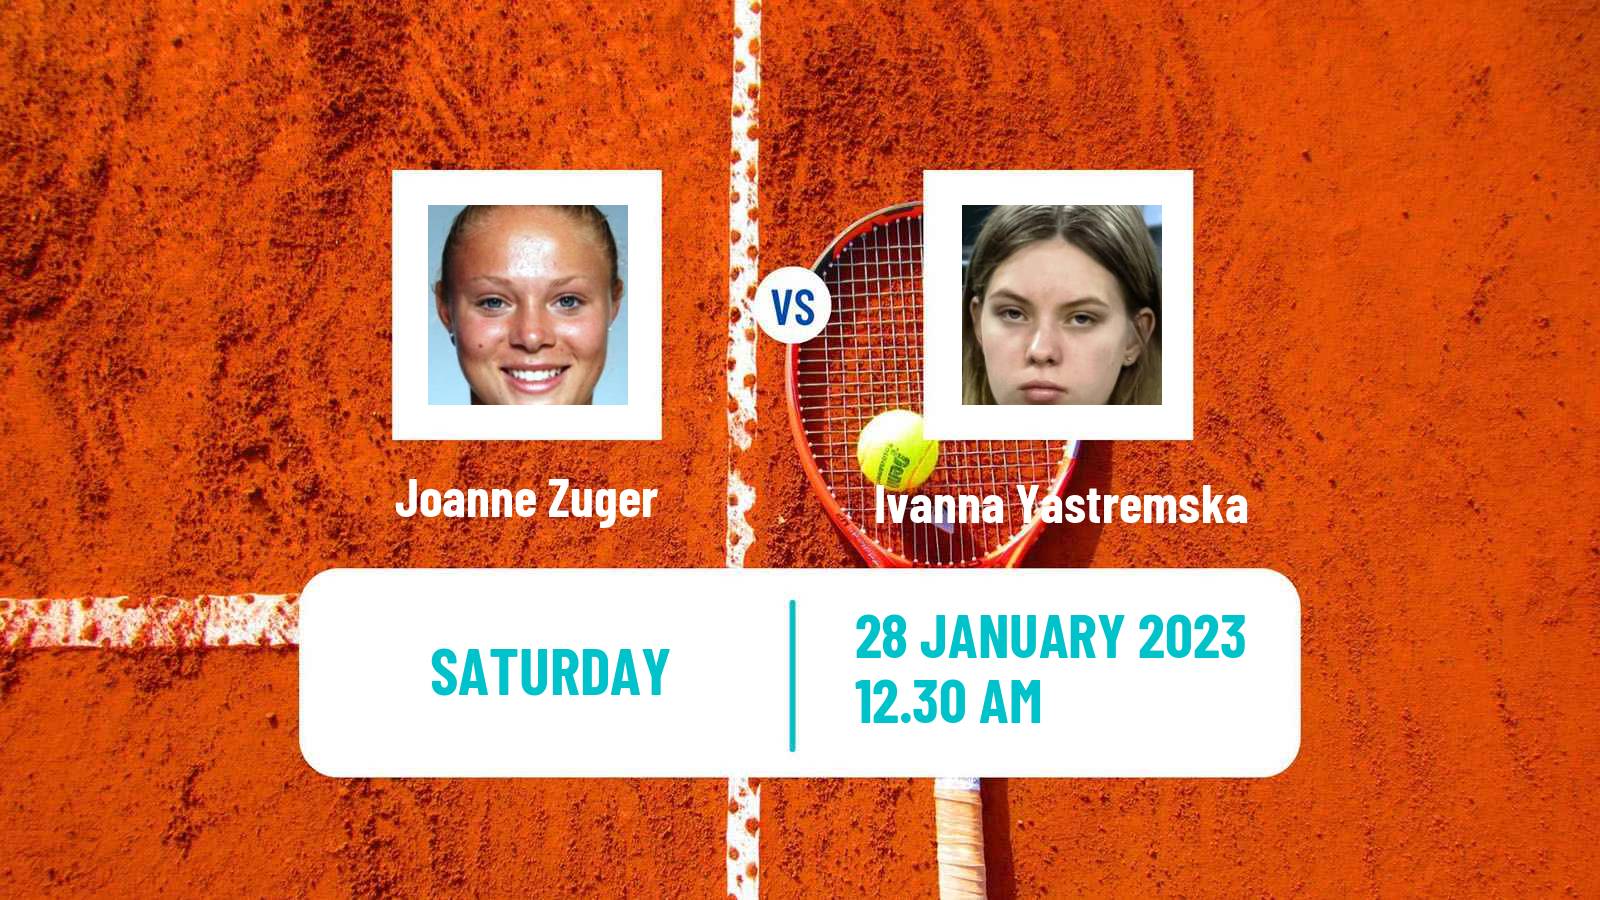 Tennis WTA Hua Hin Joanne Zuger - Ivanna Yastremska